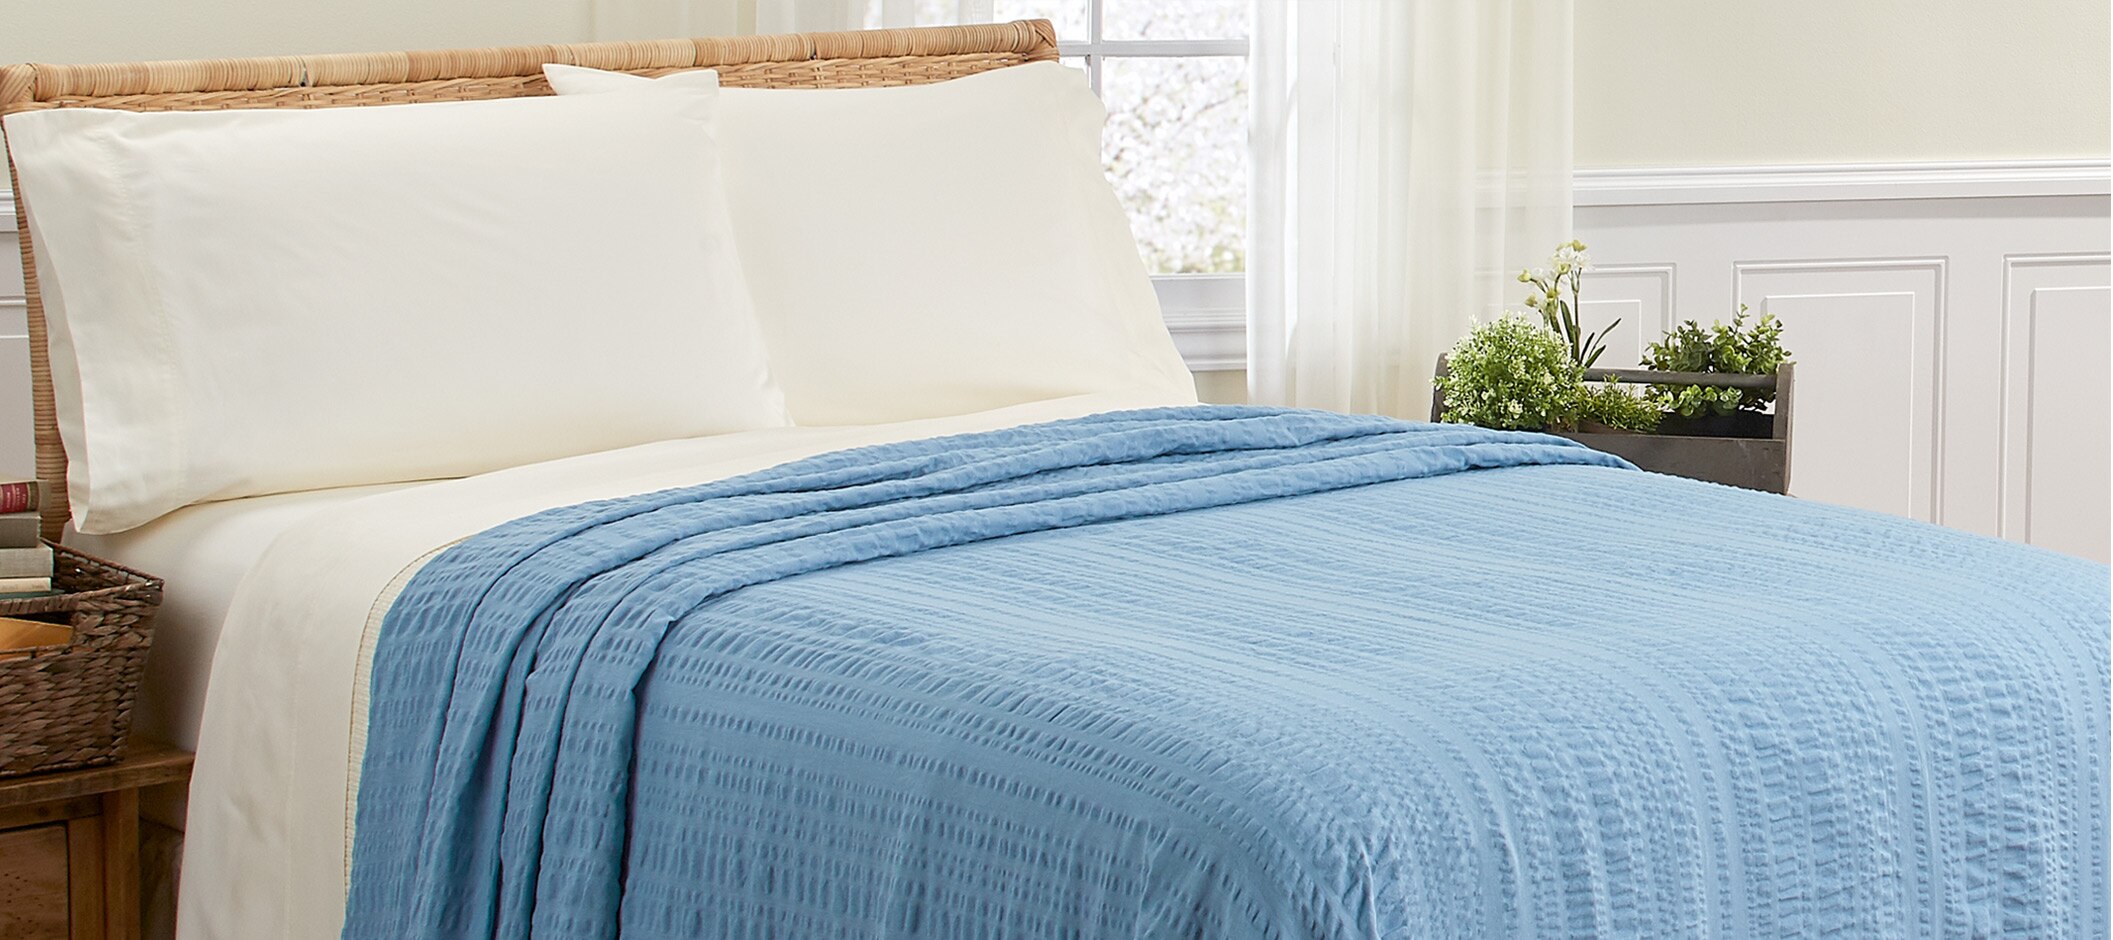 Solid Blue Seersucker Bedspread